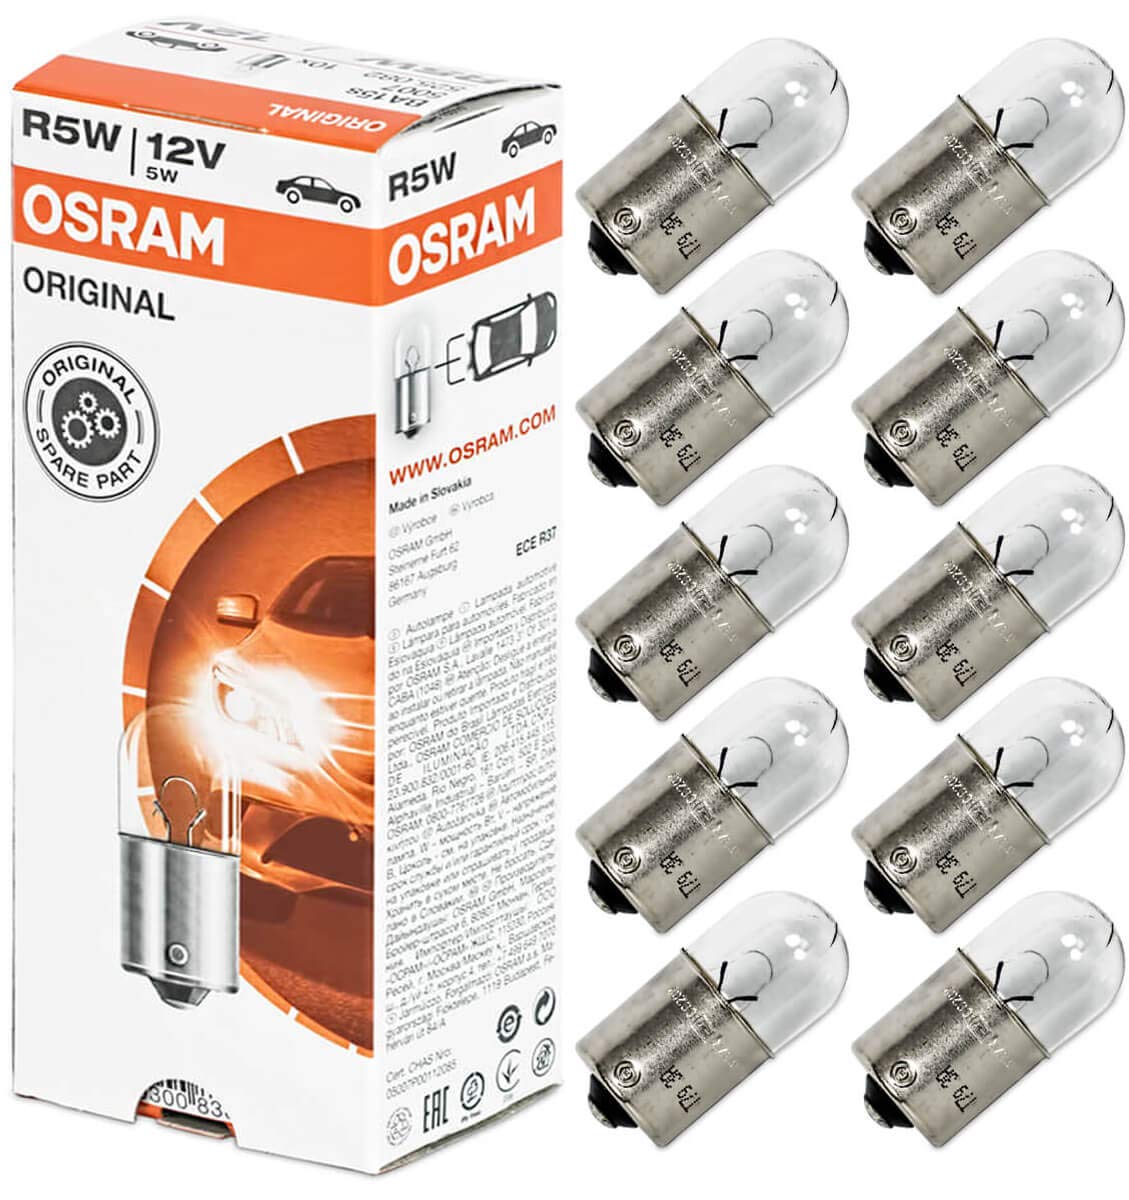 OSRAM ORIGINAL R5W Halogen, Schluss-, Kennzeichen-, Park- und Positionslicht, 5007, 12V PKW, Faltschachtel (10 Stück) von Osram